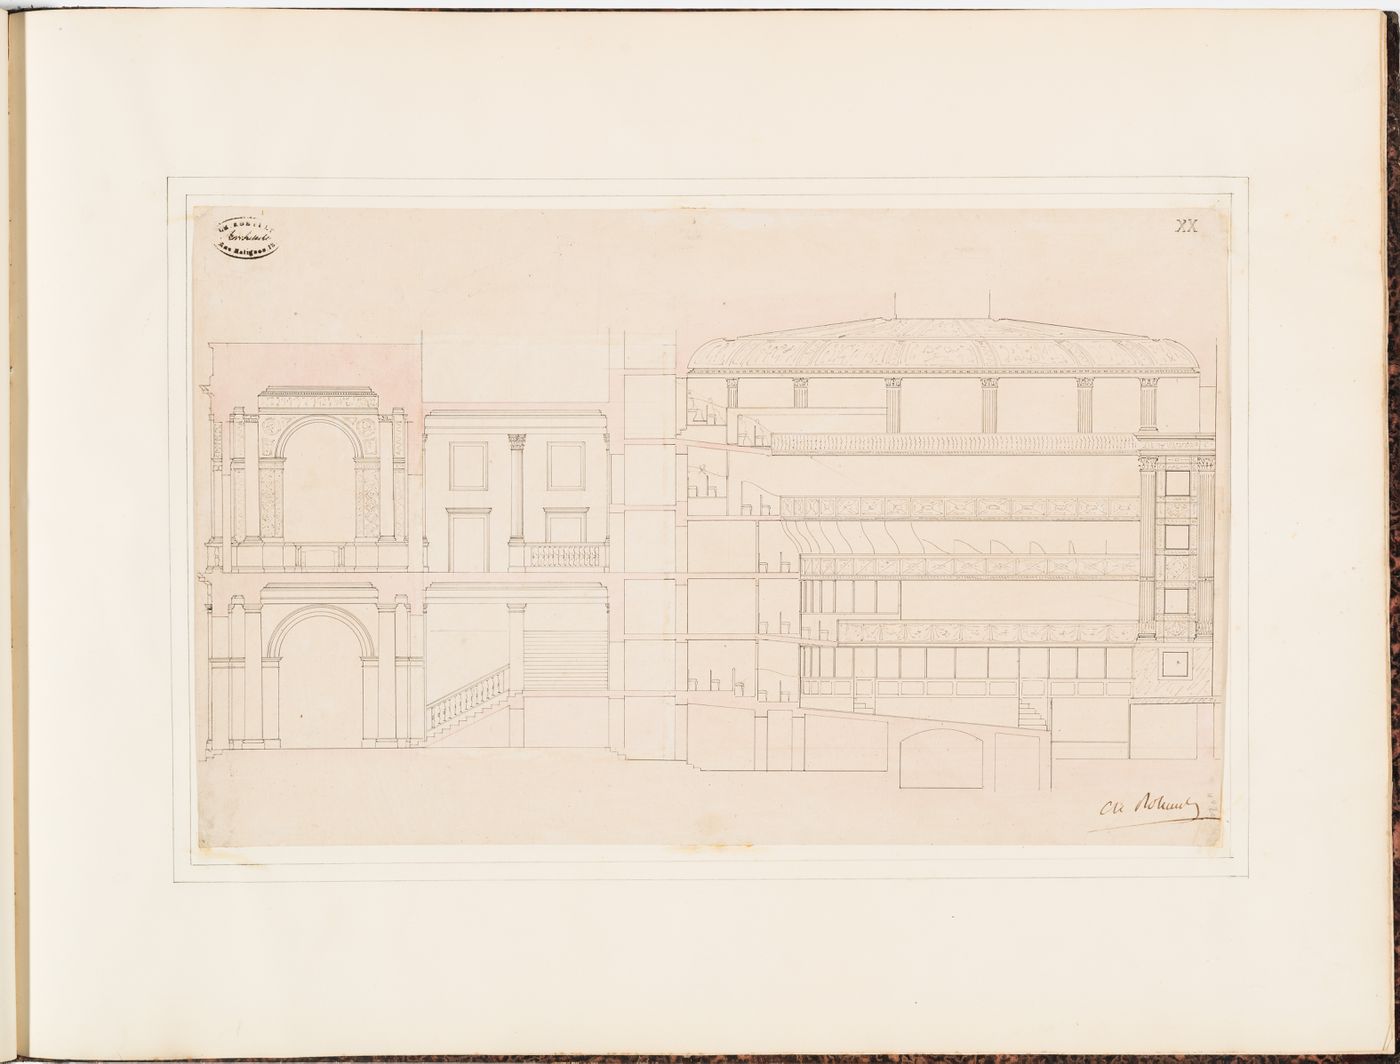 Longitudinal section for the Théâtre Royal Italien, showing the "vestibule", "foyer", "escalier", and "planchers de la salle"